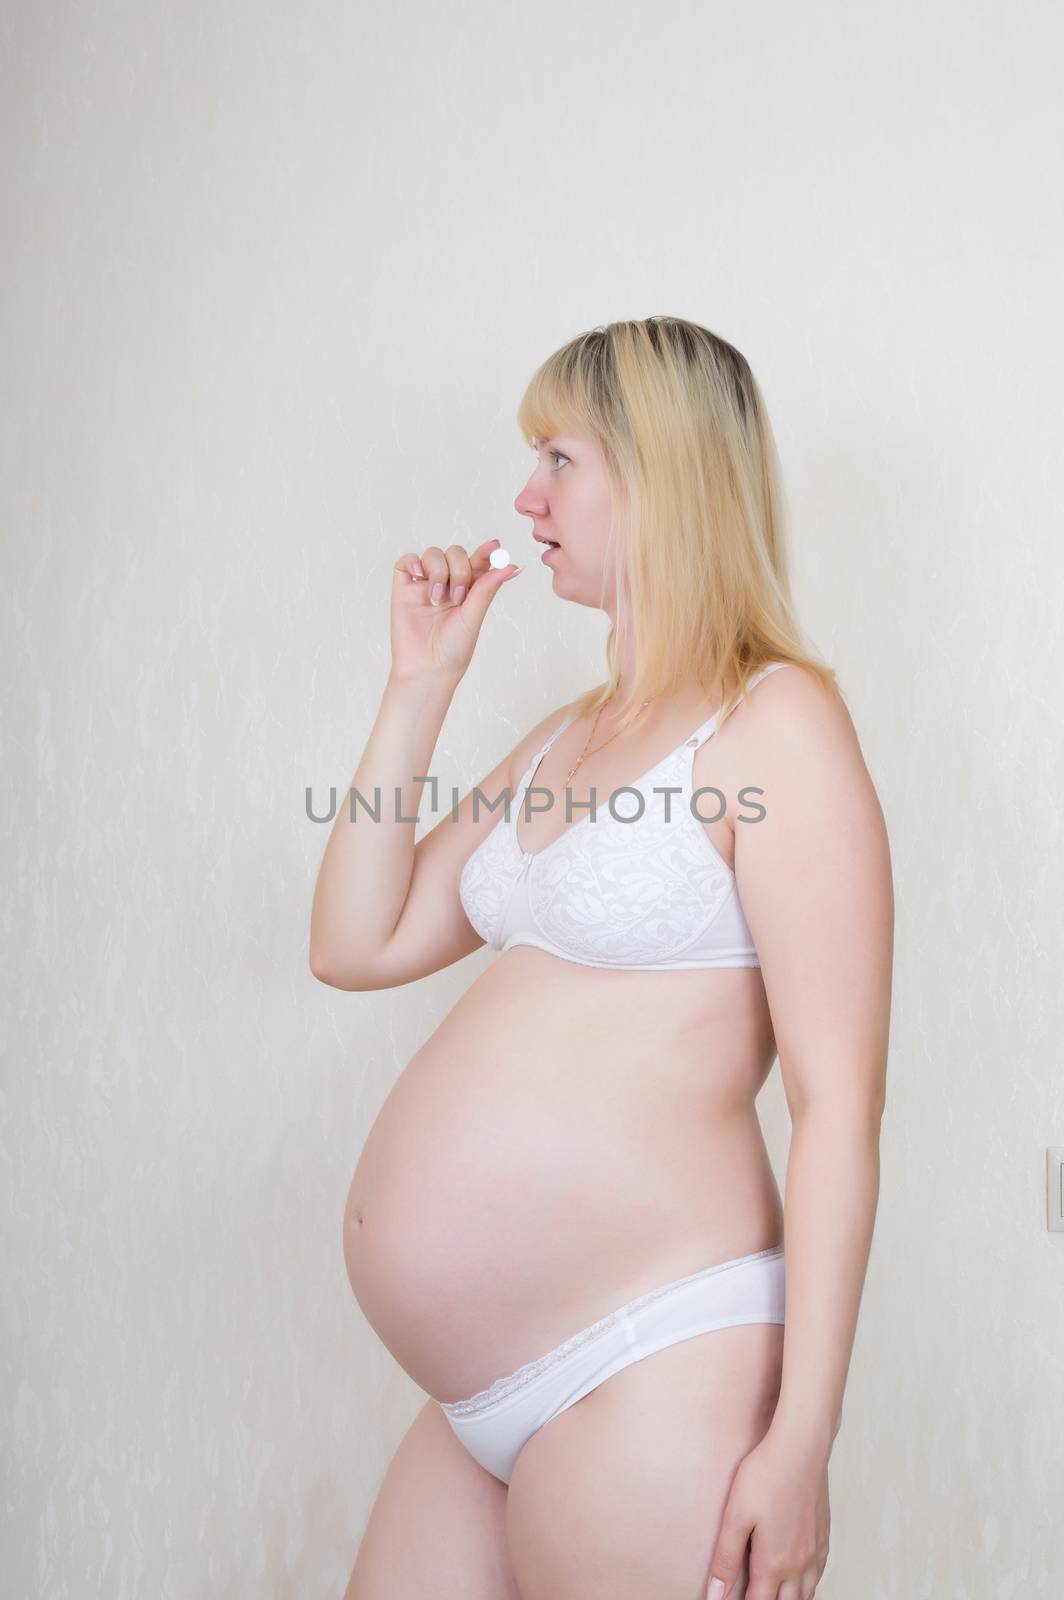 Treatment of the expectant mother by kromeshnik